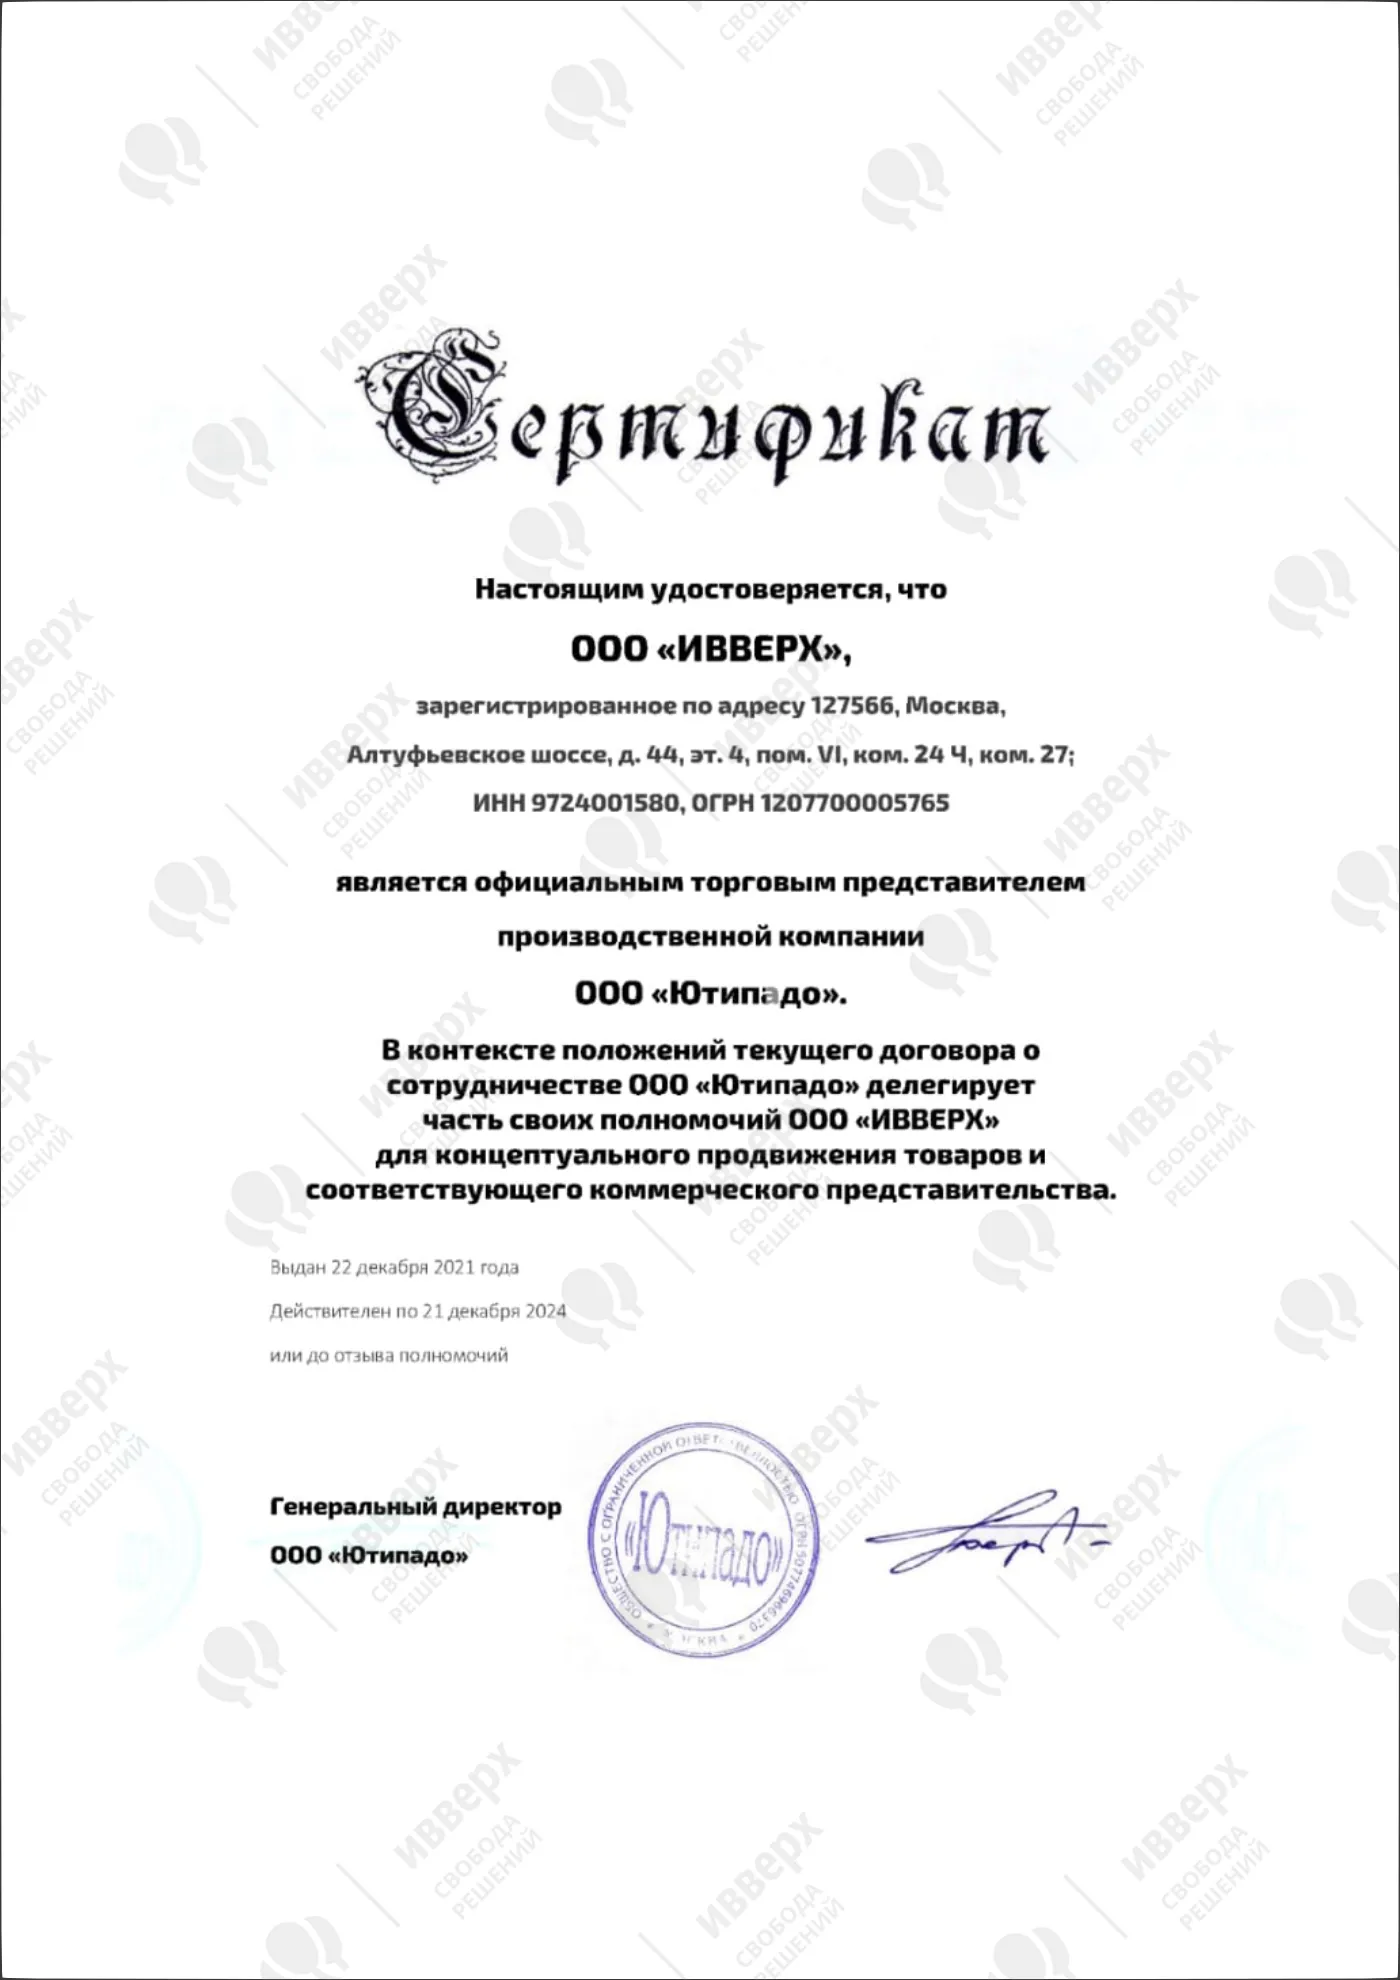 Компания «Ютипадо» занимается исследованием рынка медицинских изделий и продвижением продукции Smiths Medical и Portex в России.